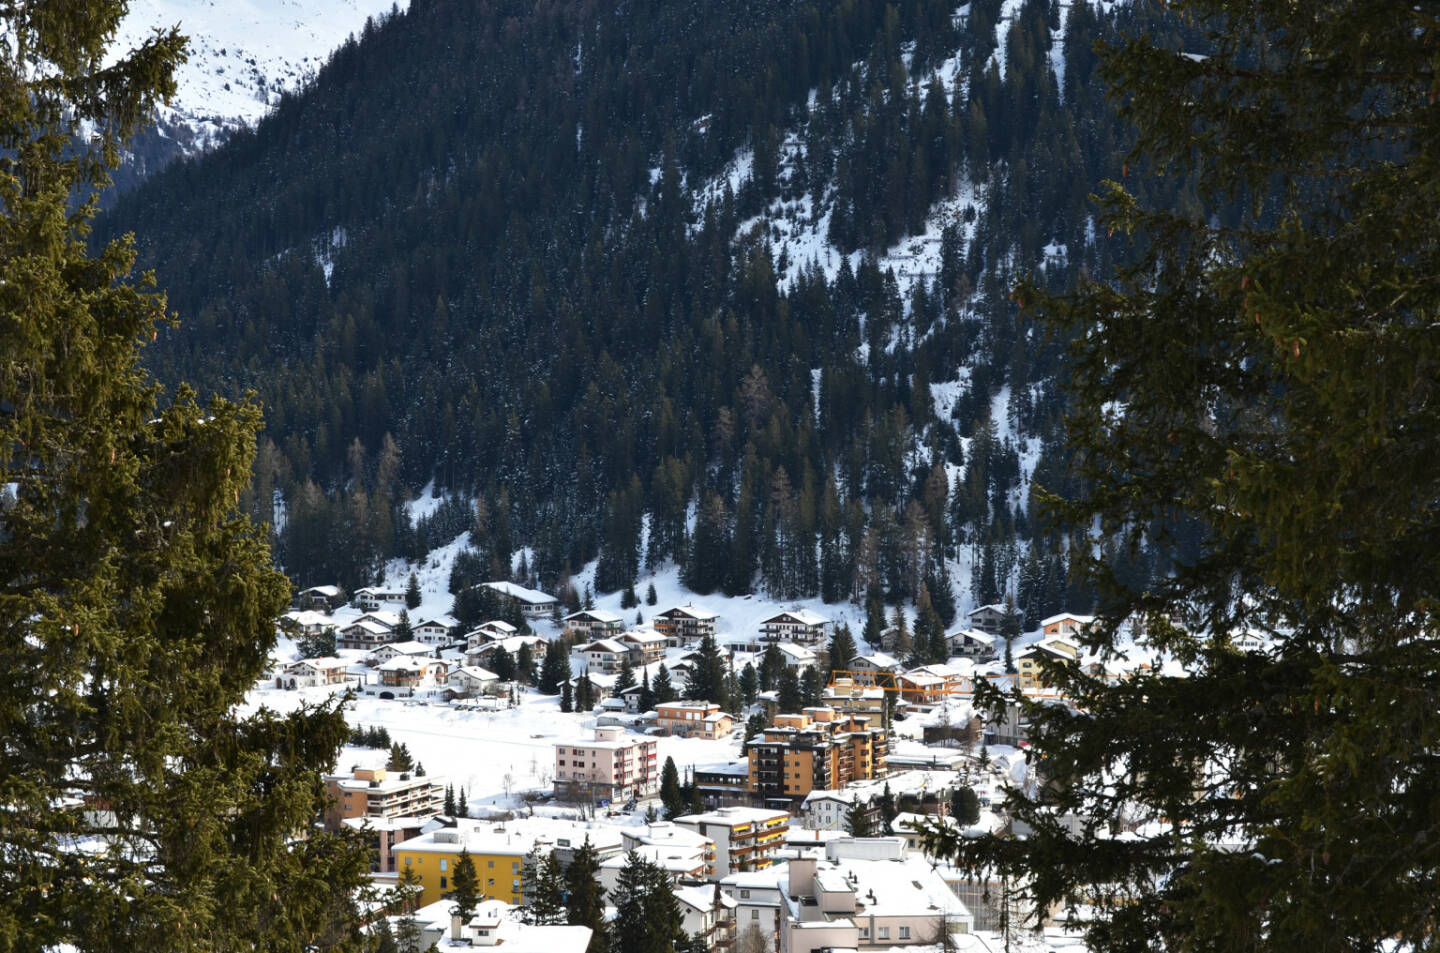 Davos, Schweiz, Winter - http://www.shutterstock.com/de/pic-245283289/stock-photo-winter-view-of-davos-famous-swiss-skiing-resort.html